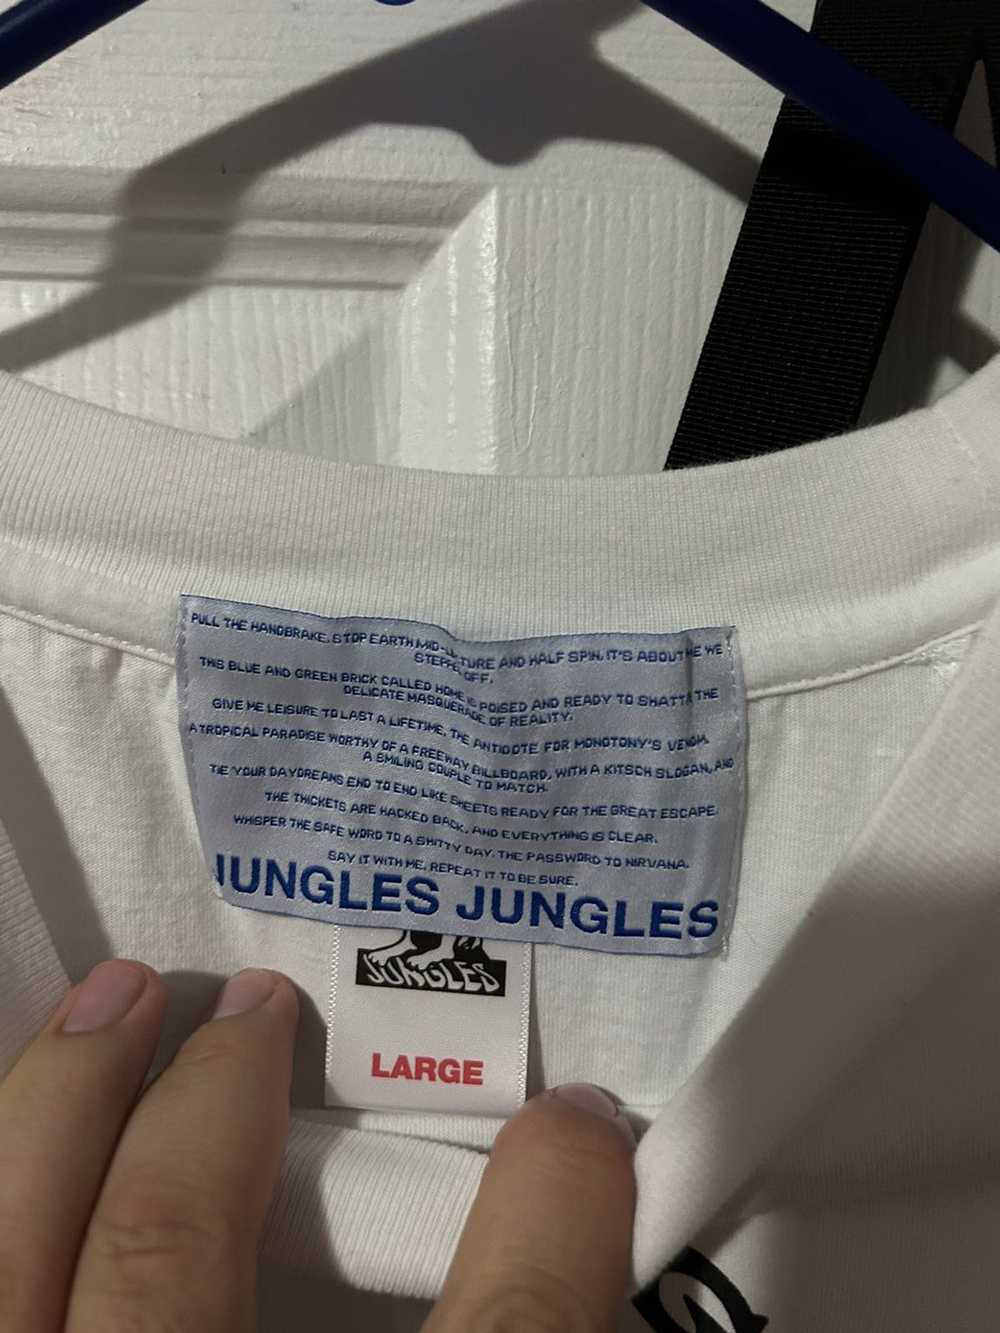 Jungles Jungles jungles California shirt - image 2